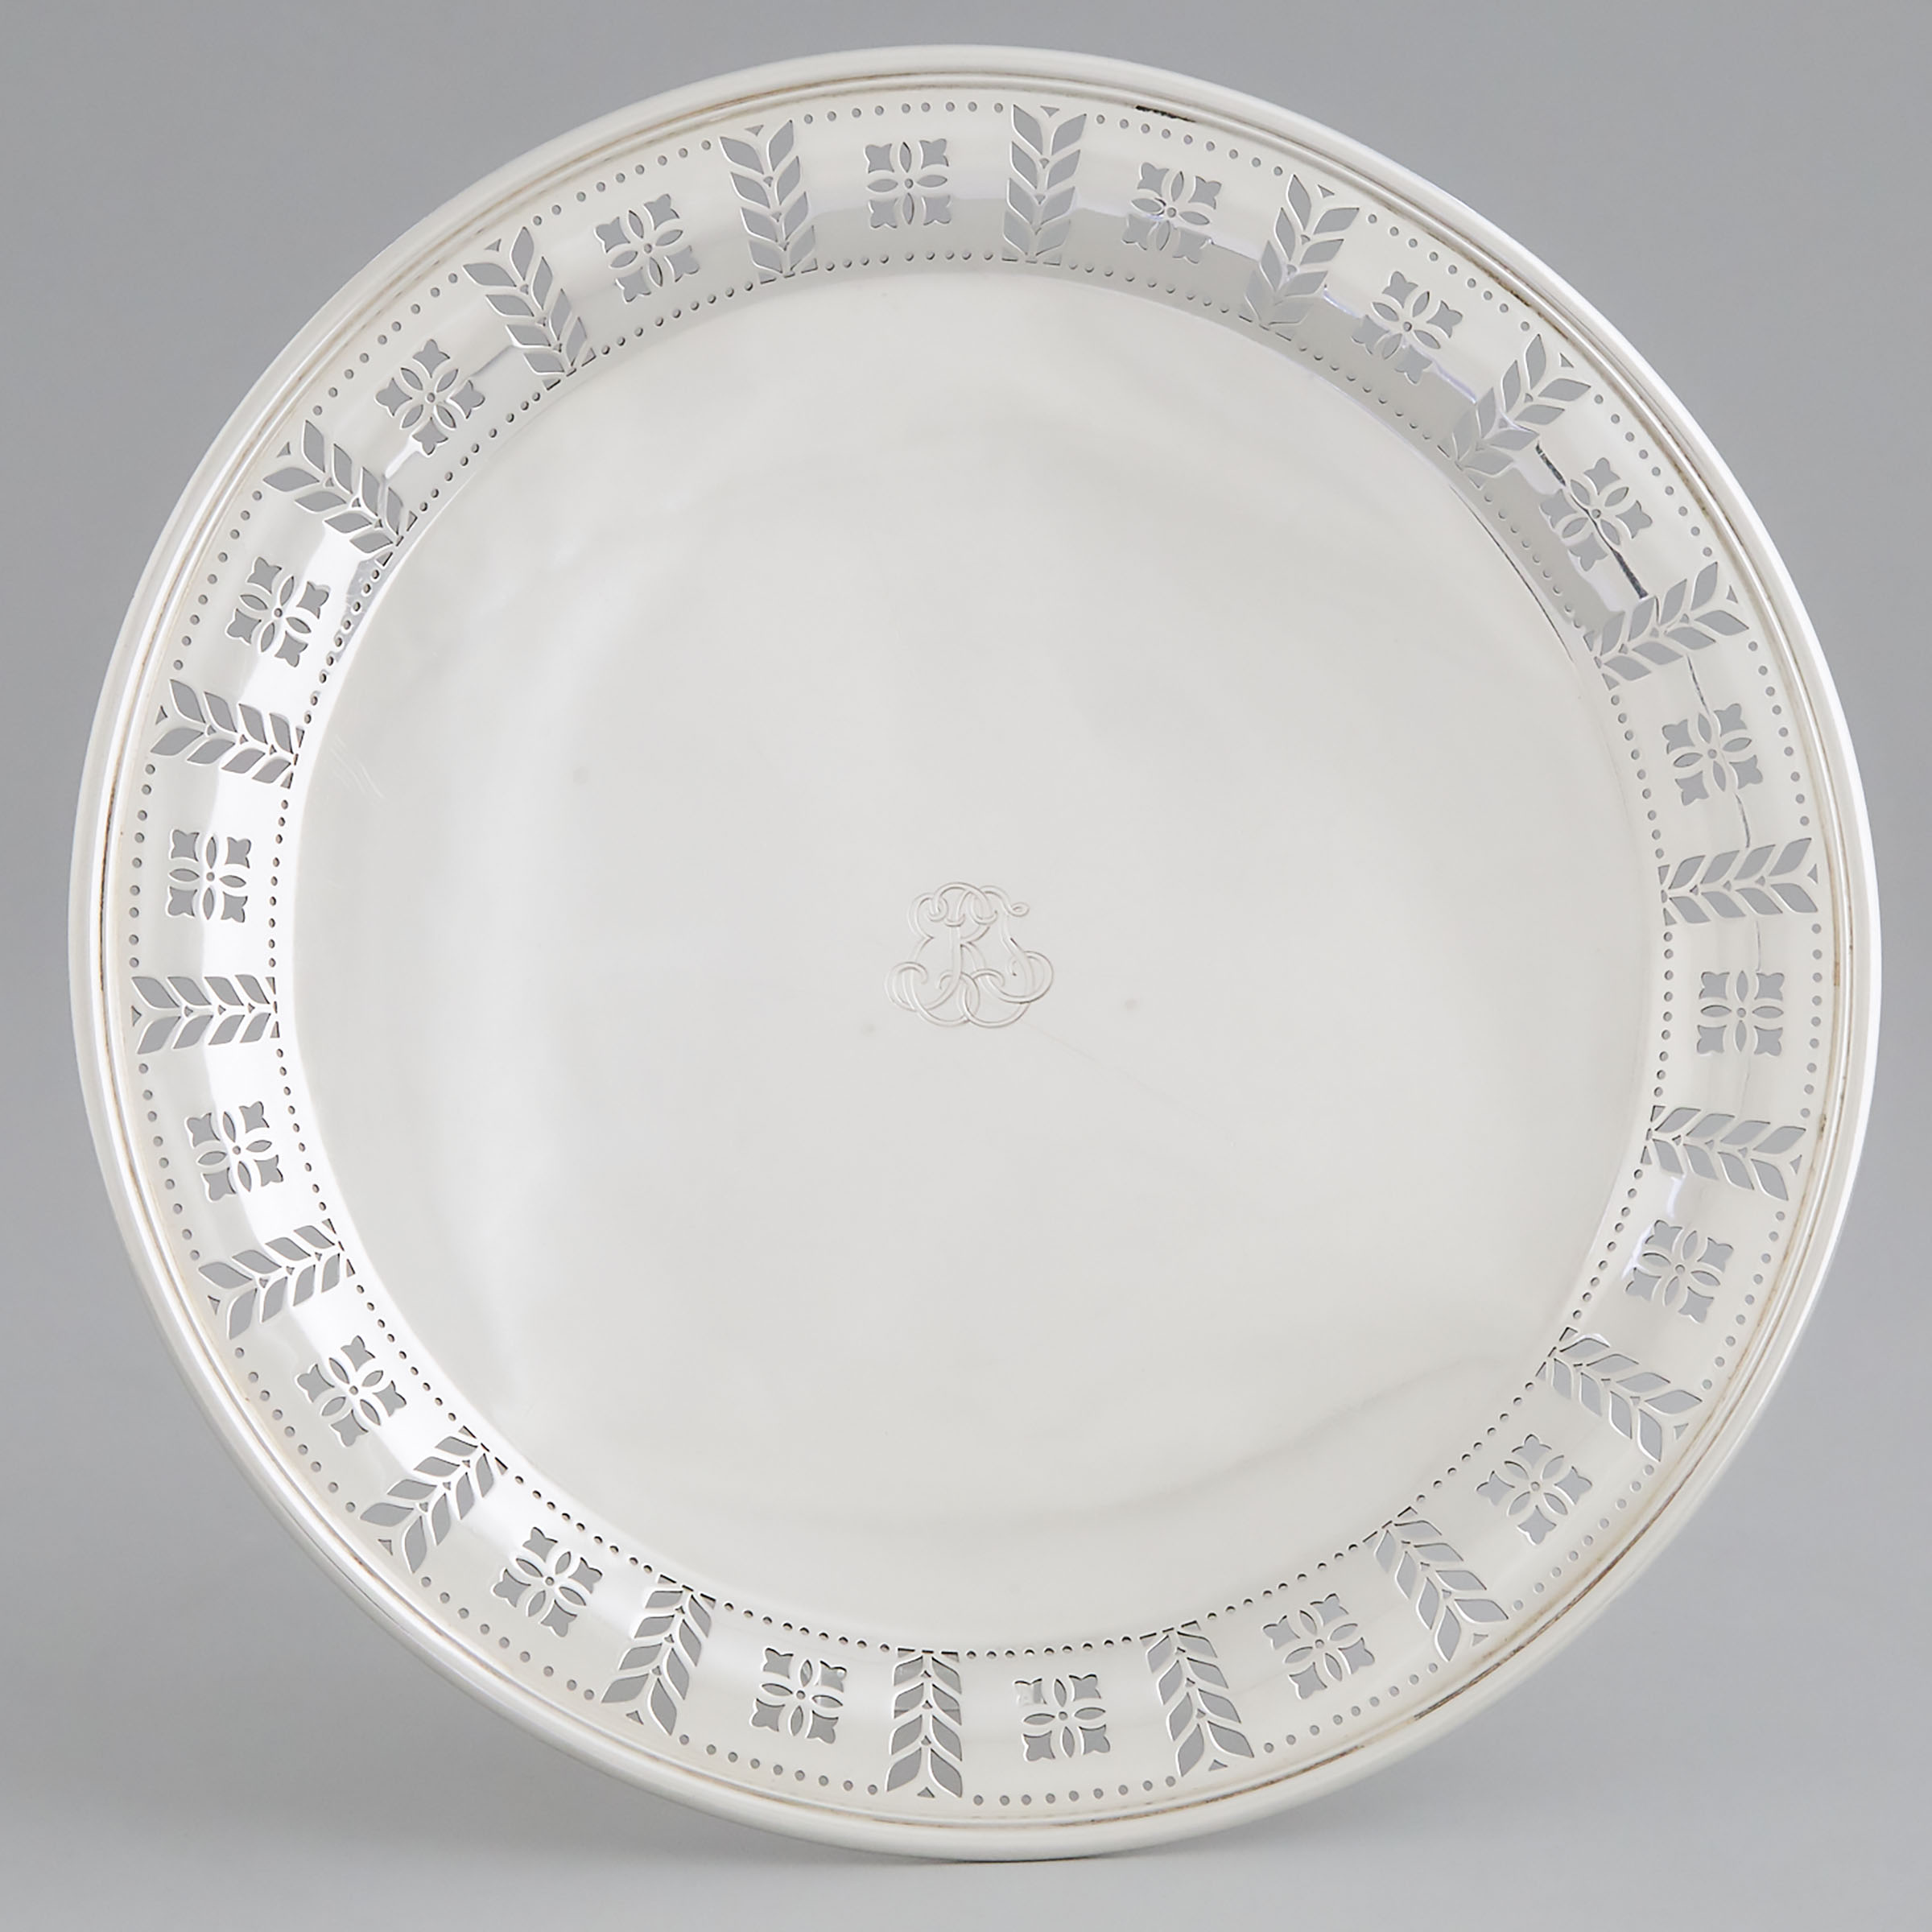 American Silver Pierced Cake Plate, Tiffany & Co., New York, N.Y., c.1907-47